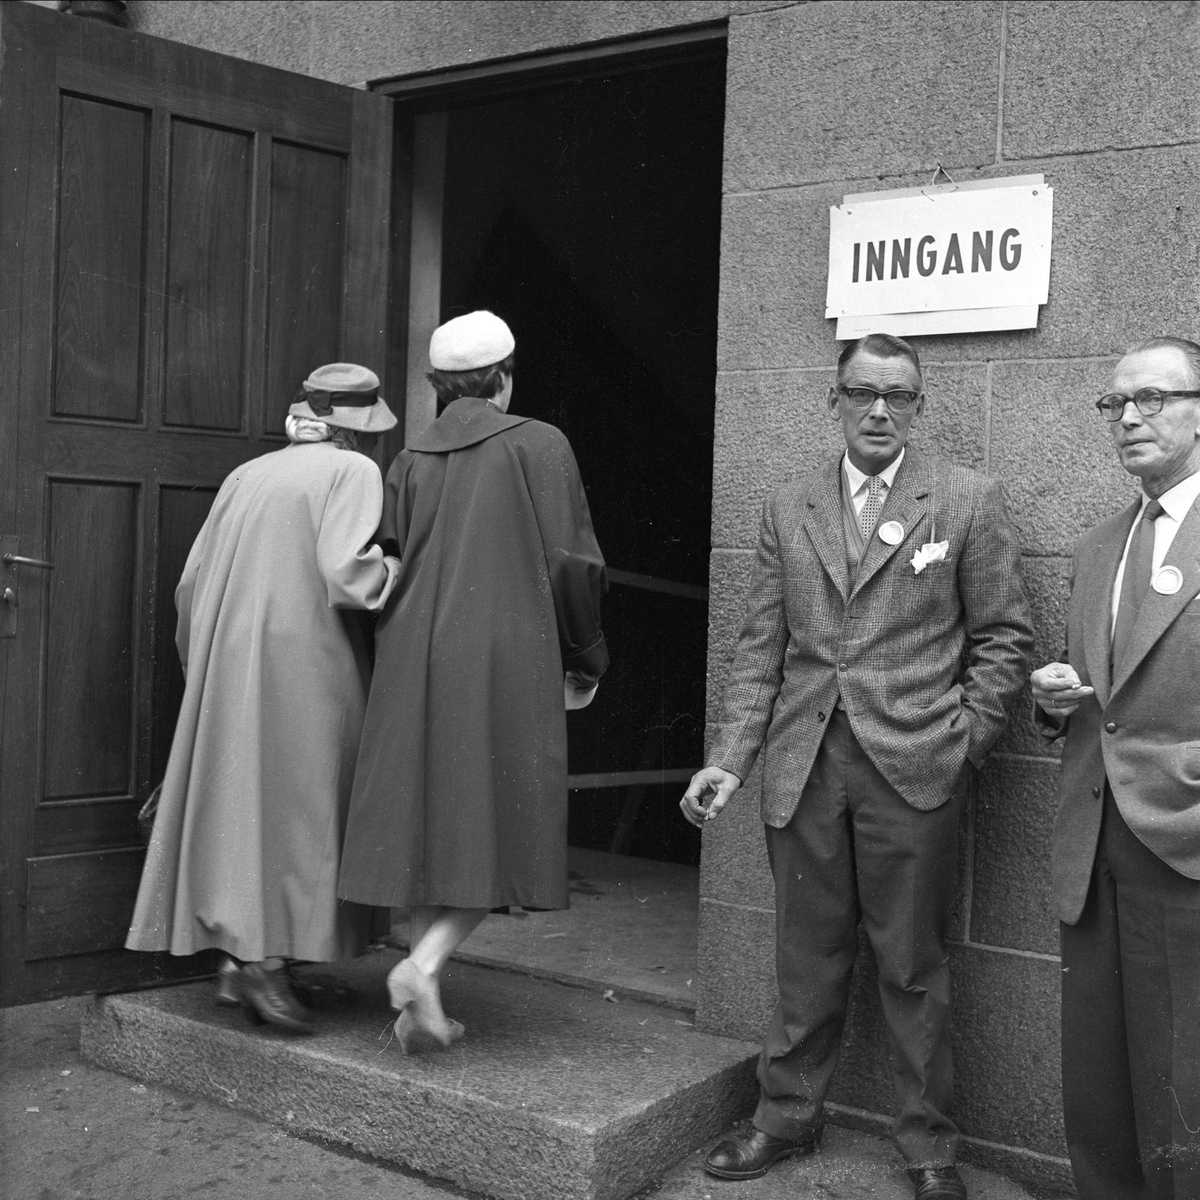 Kommunevalg. På vei til lokalet, Oslo. Oktober 1959.